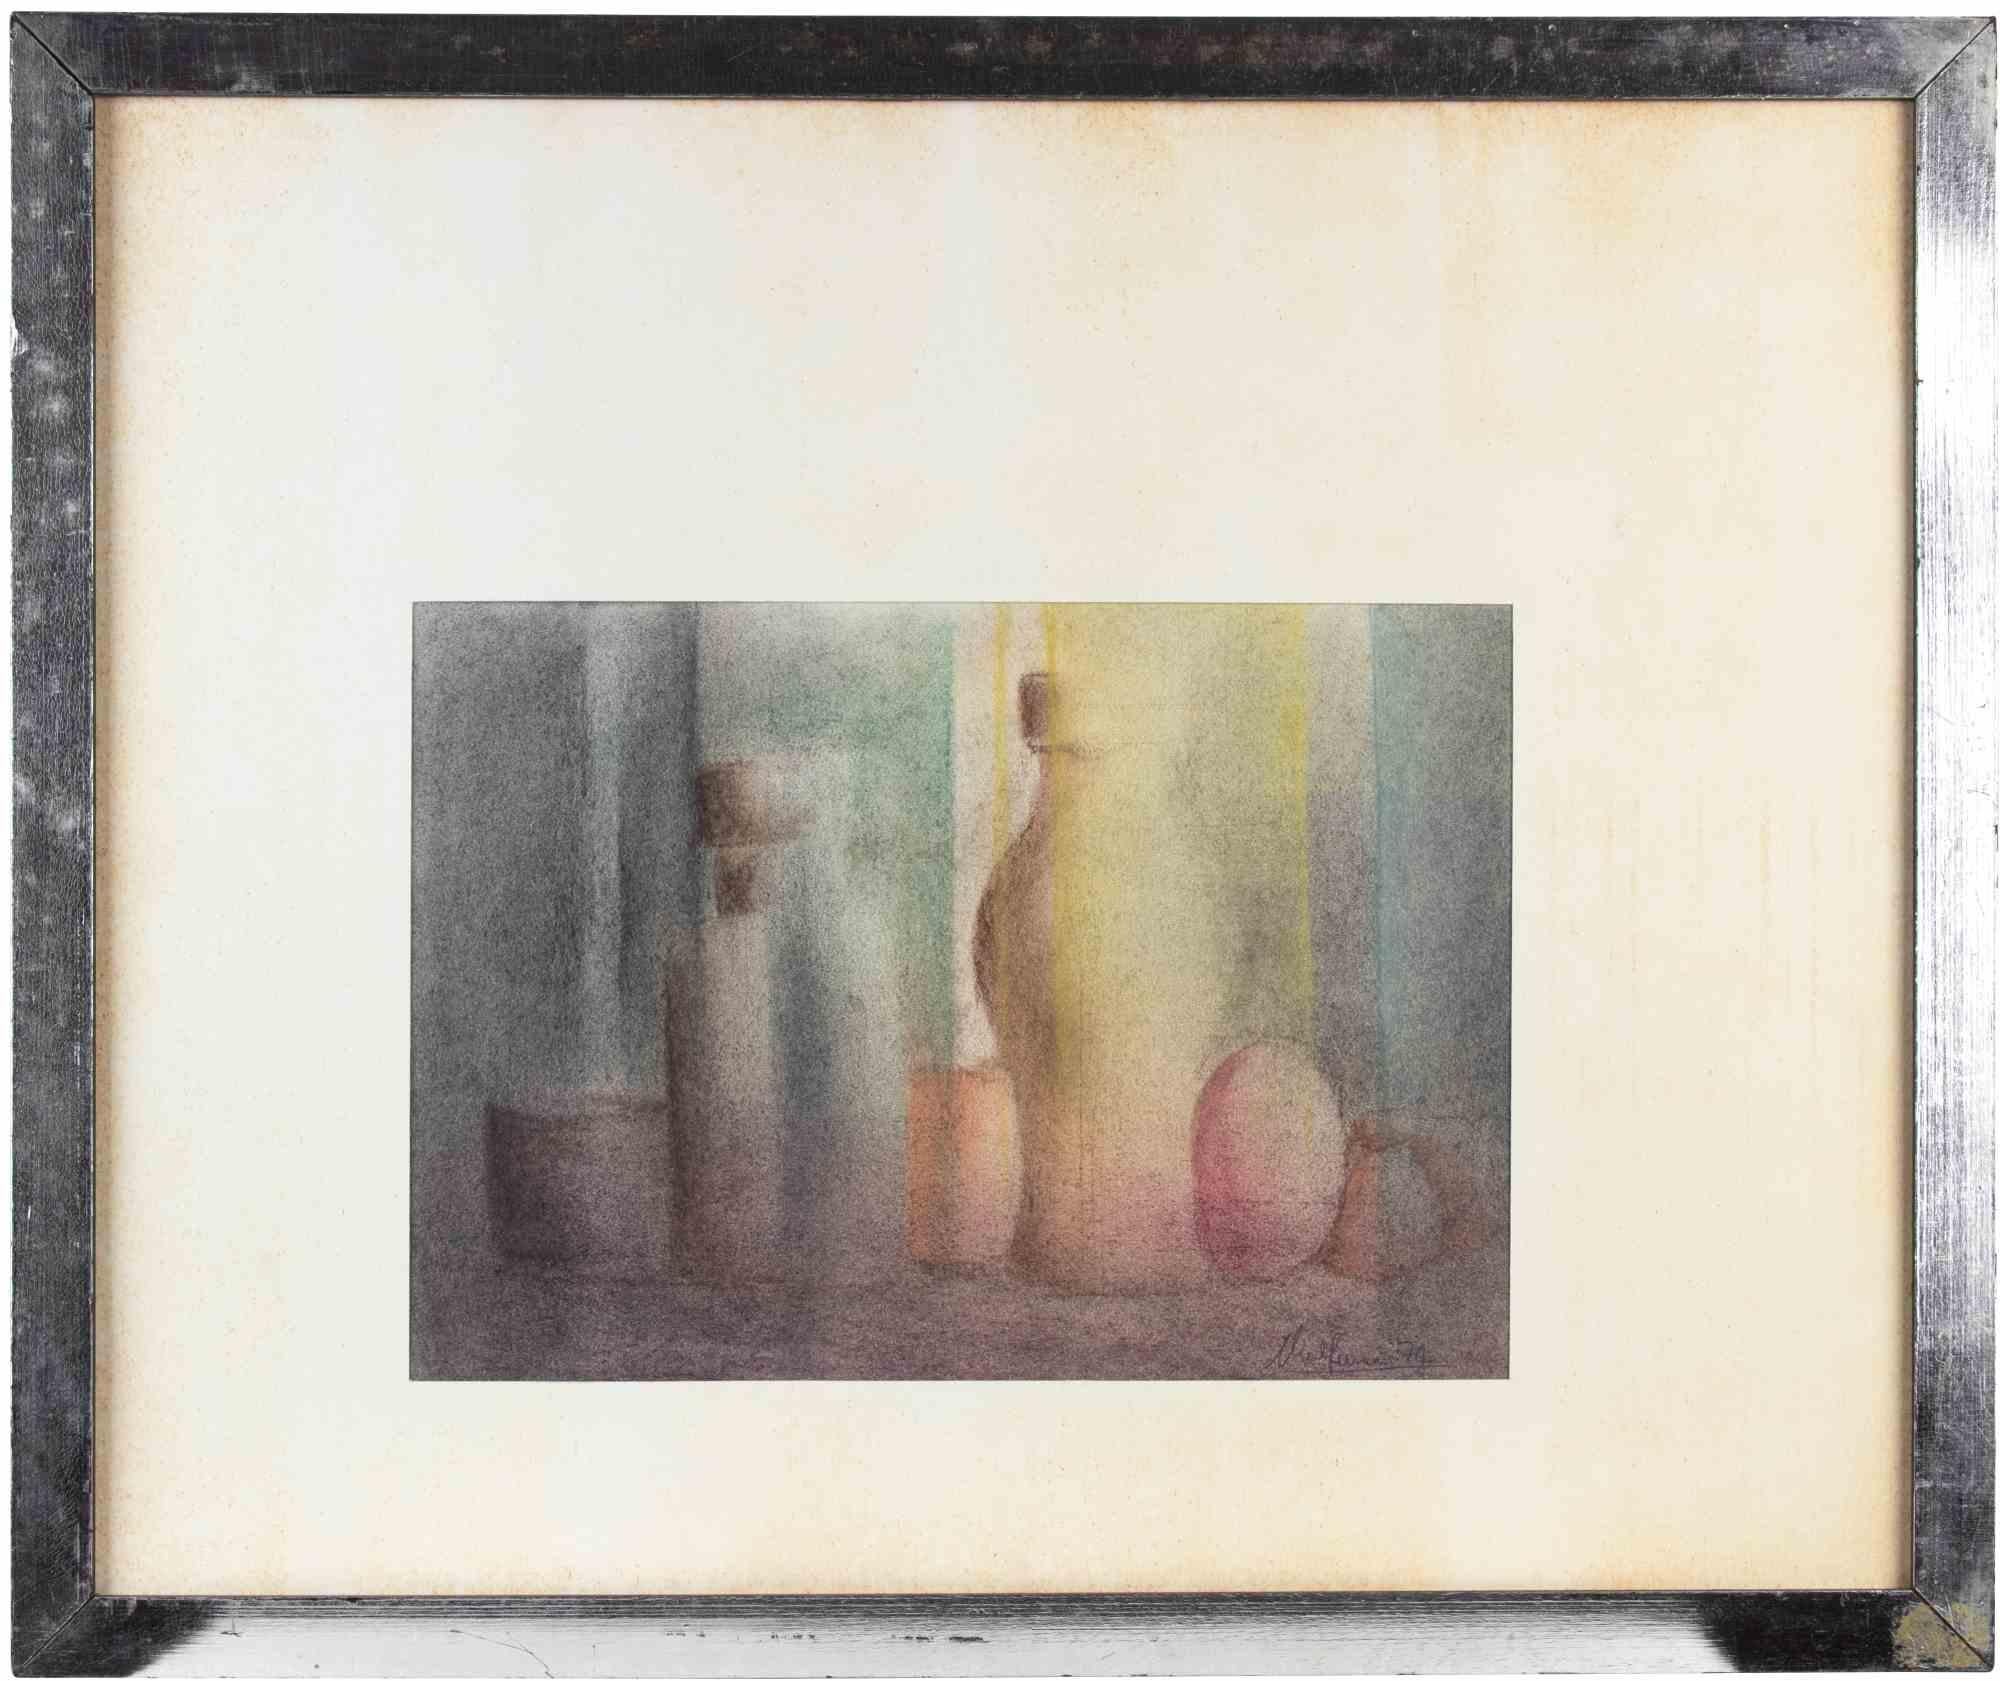 Vases ist ein zeitgenössisches Kunstwerk, das von Alfredo Malferrari realisiert wurde.

Gemischte farbige Zeichnung.

Handsigniert und datiert am unteren Rand

Inklusive Rahmen

Angemessene Bedingungen